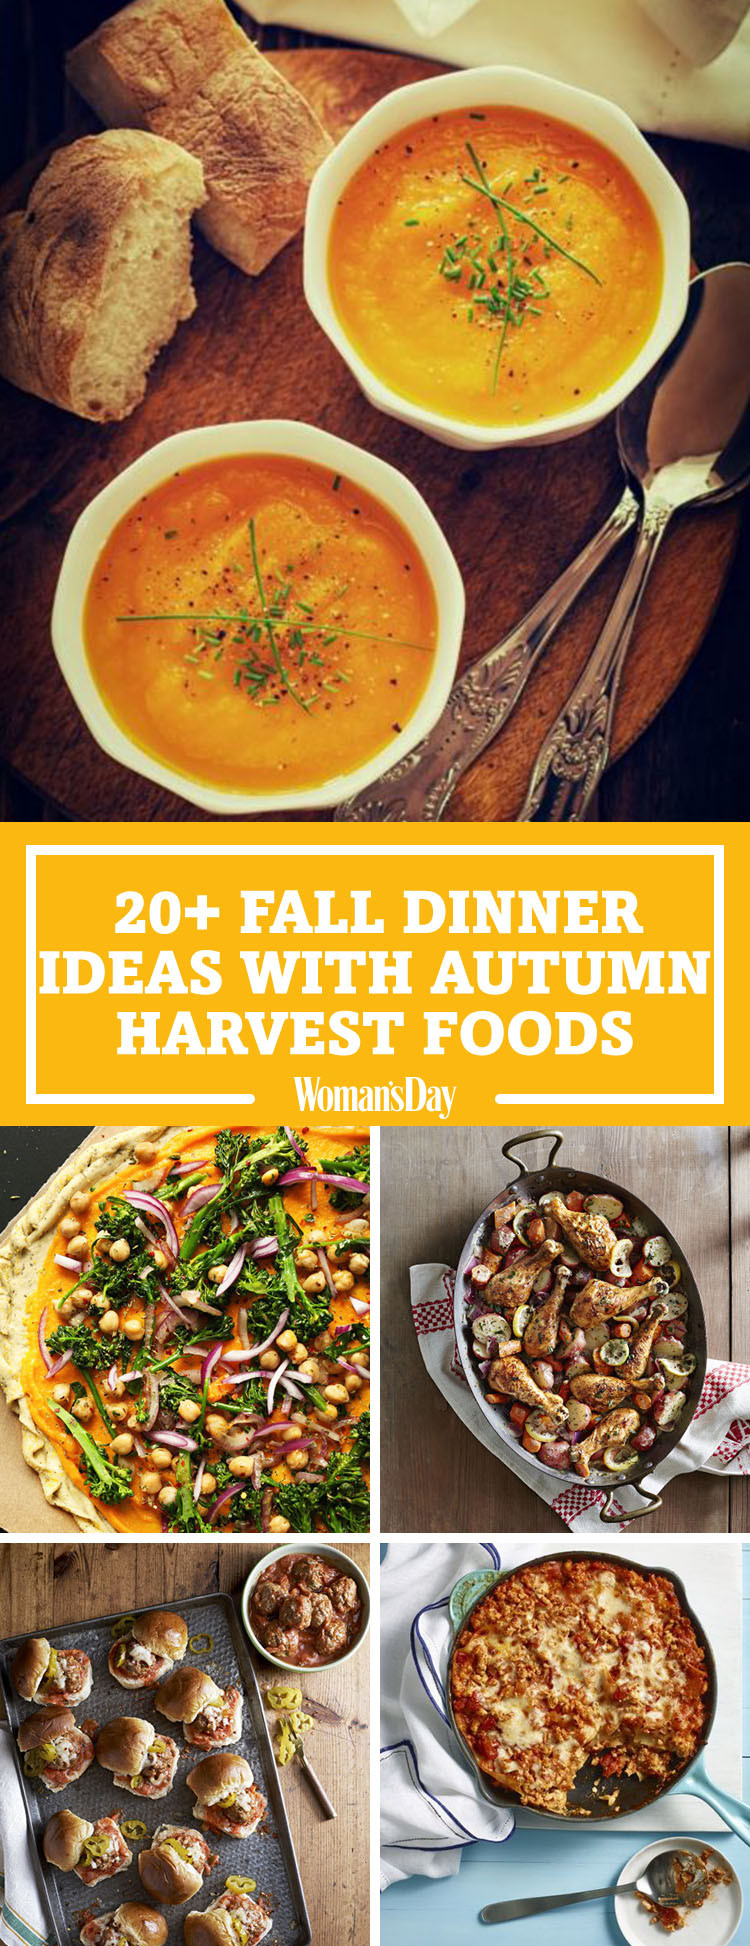 Best Fall Dinner Recipes
 26 Easy Fall Dinner Ideas Best Dinner Recipes for Autumn